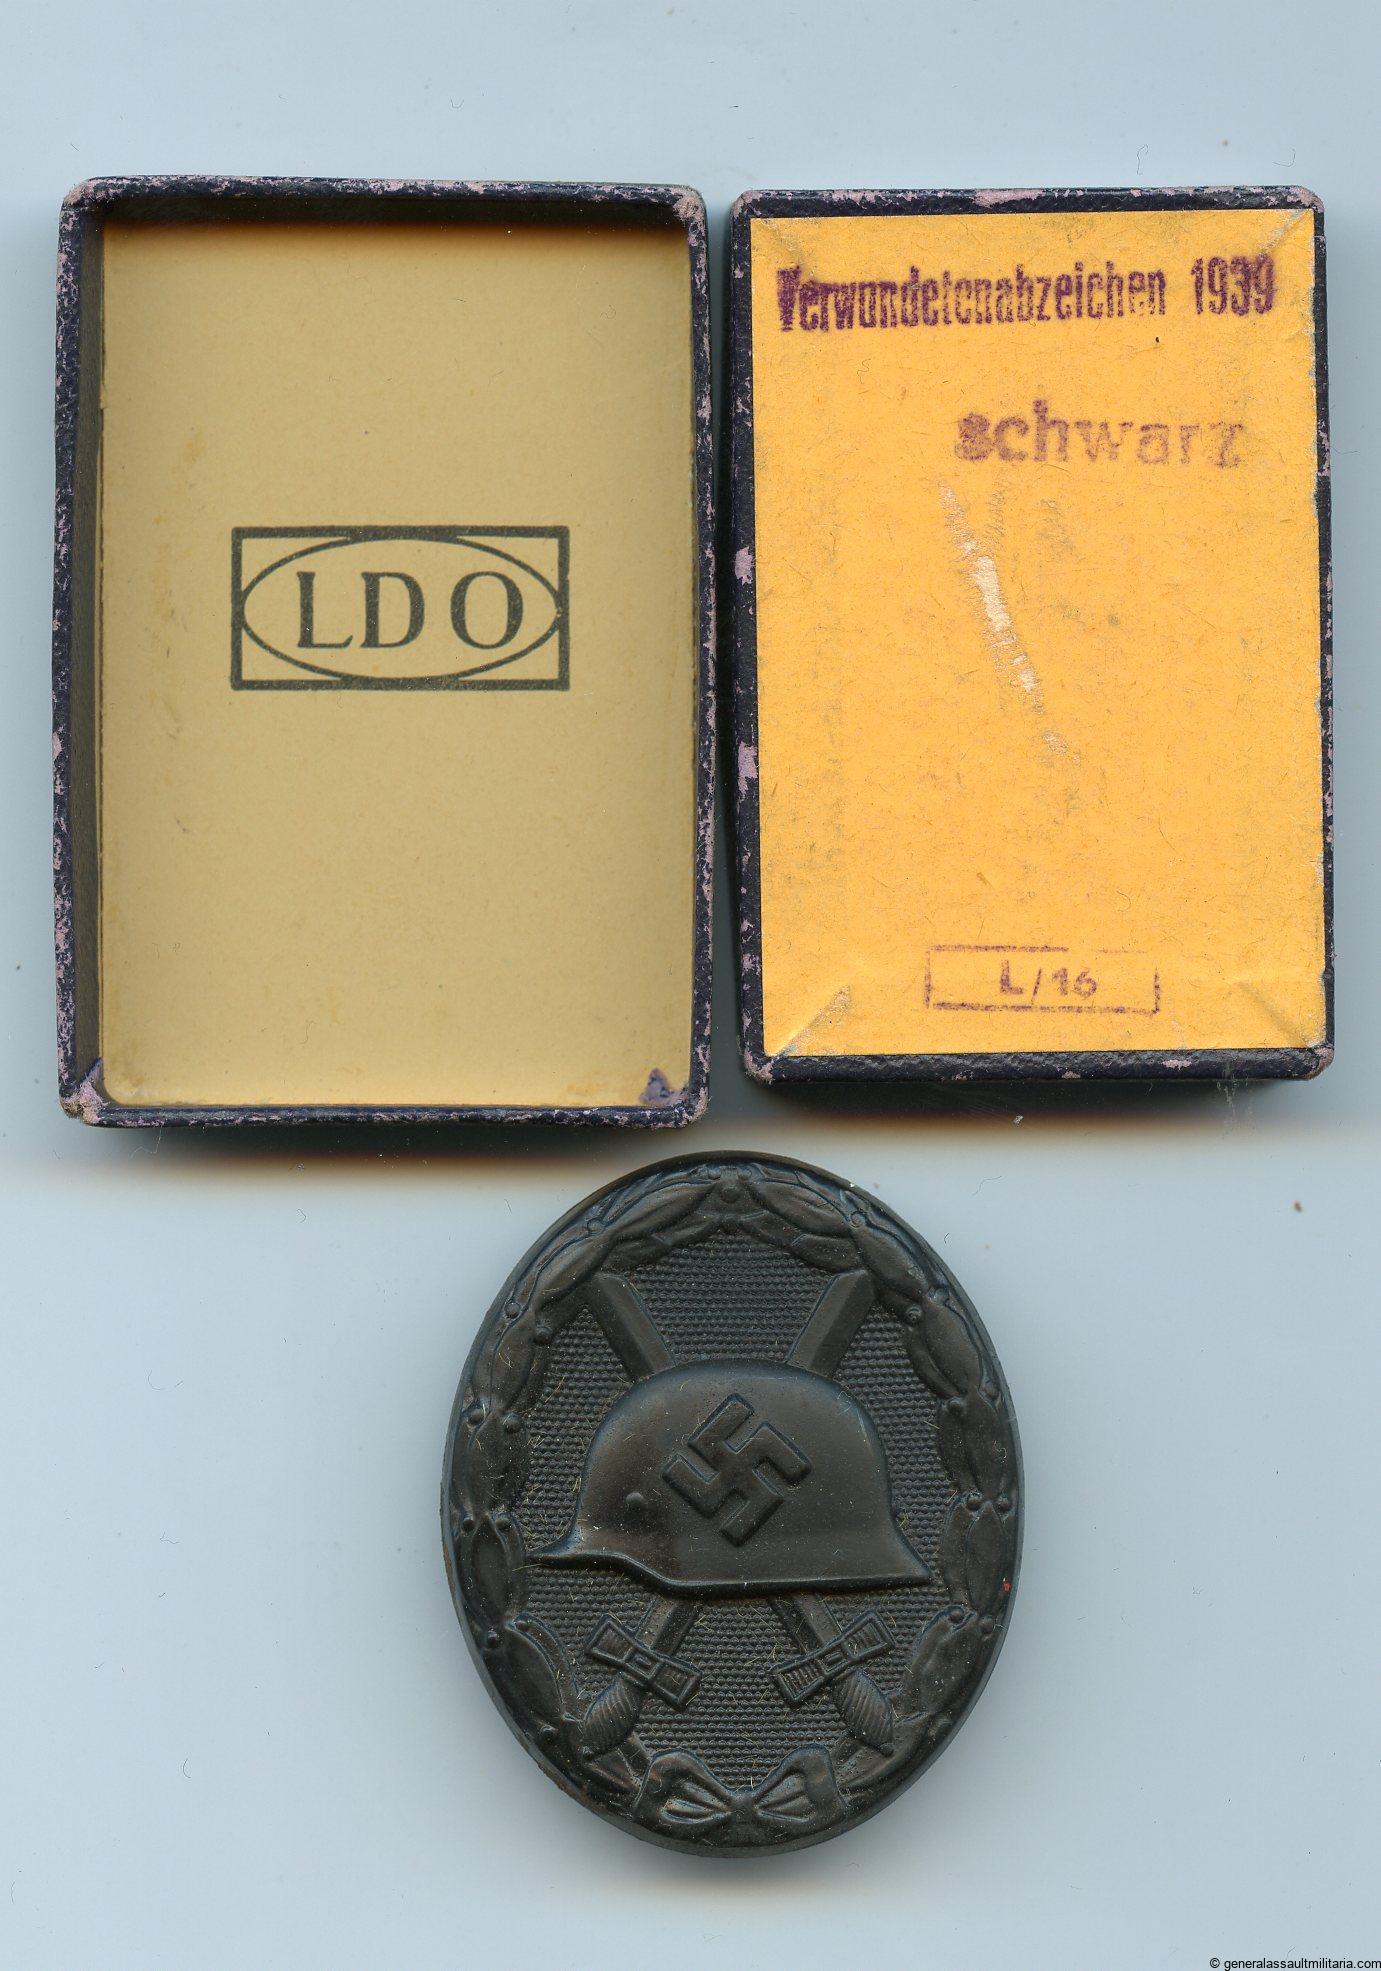 Wound badge in black + LDO box – L/16 Steinhauer & Lück 